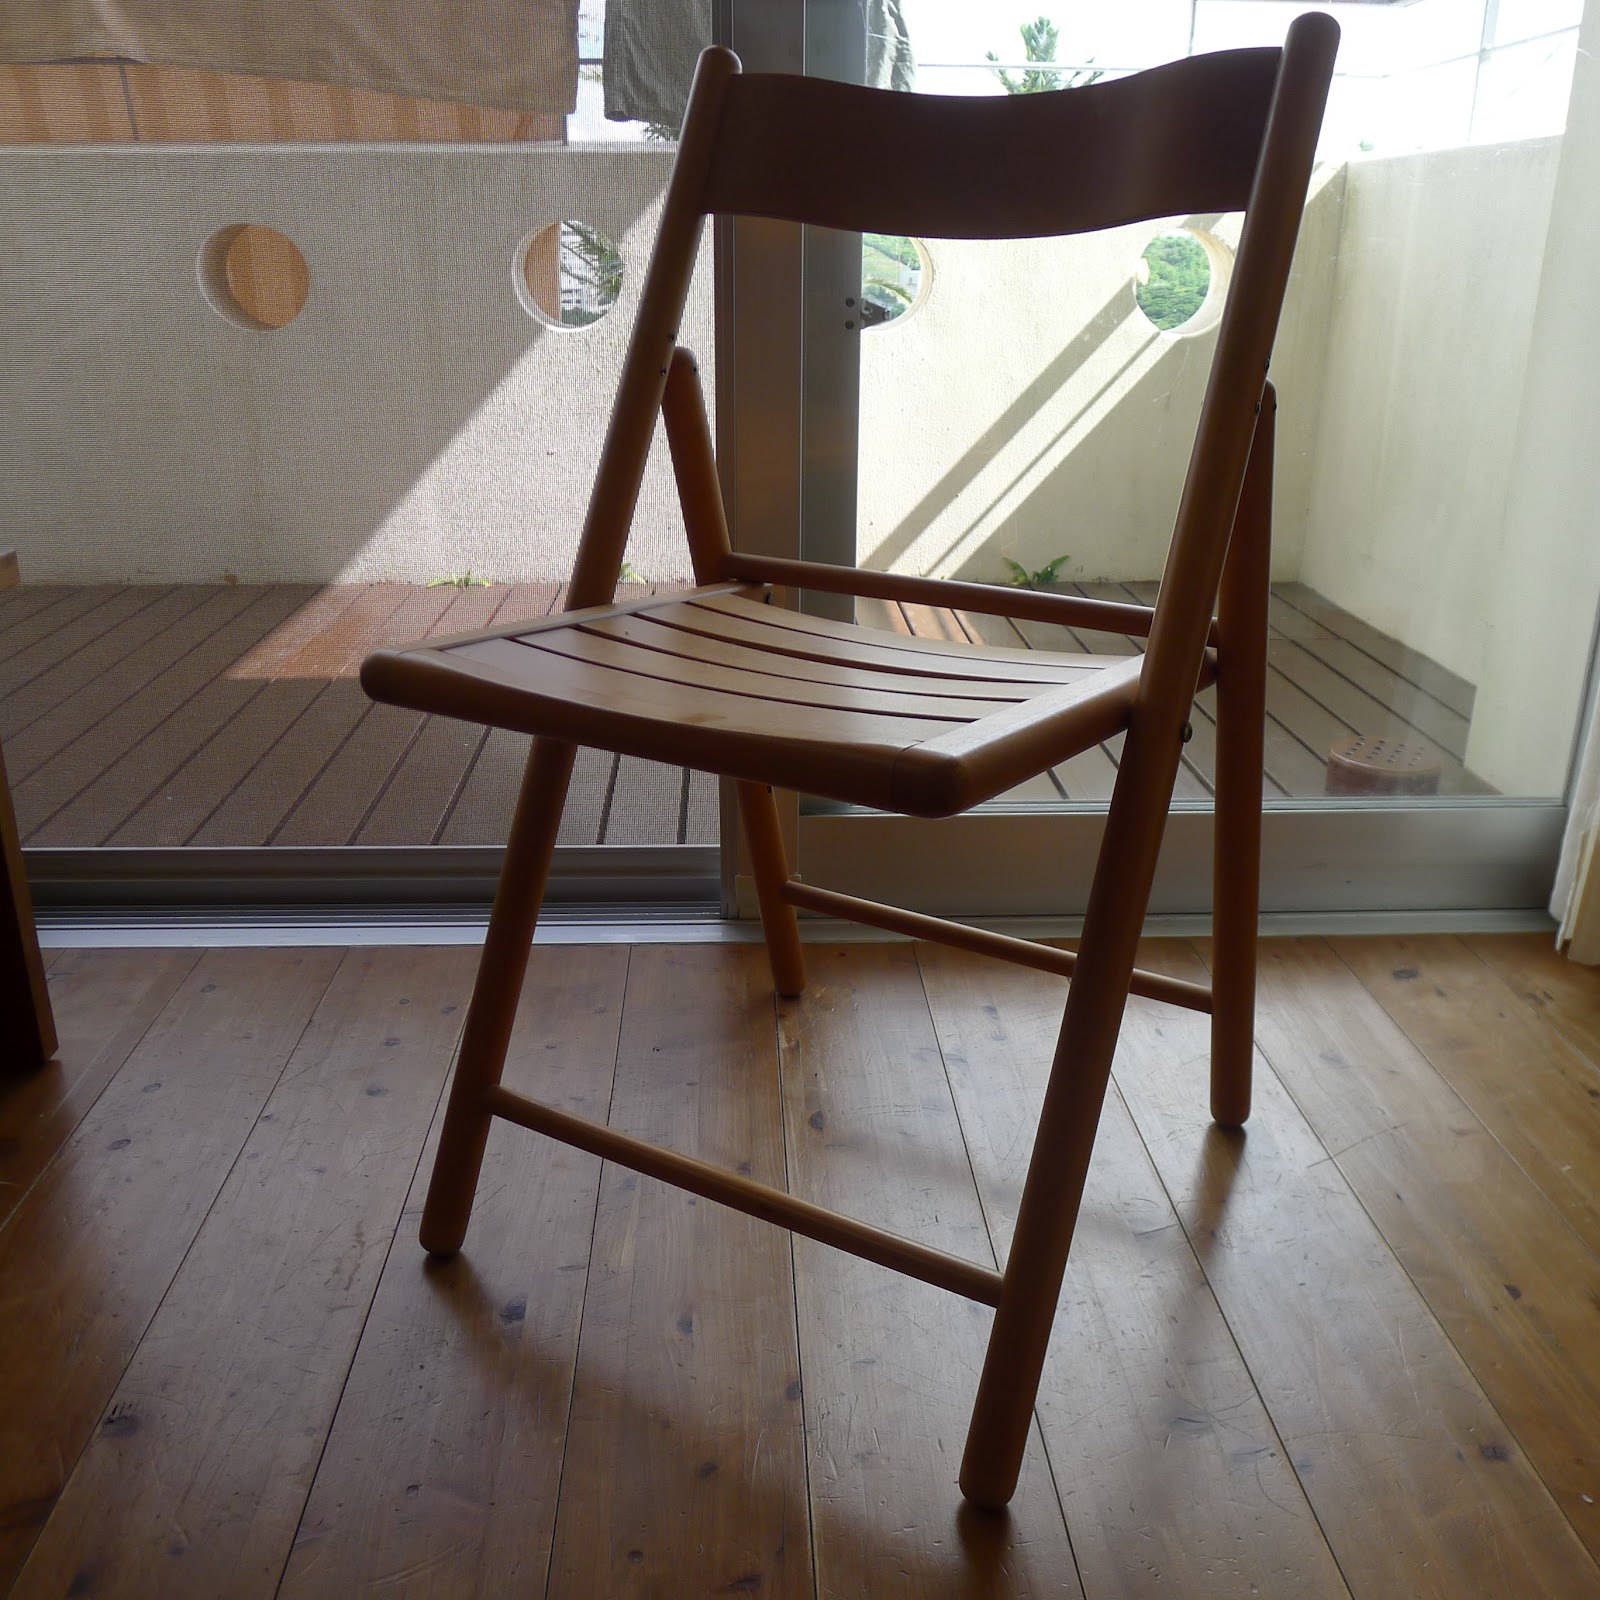 uyabin の 思いつきとやっつけ: 無印良品の折りたたみ椅子